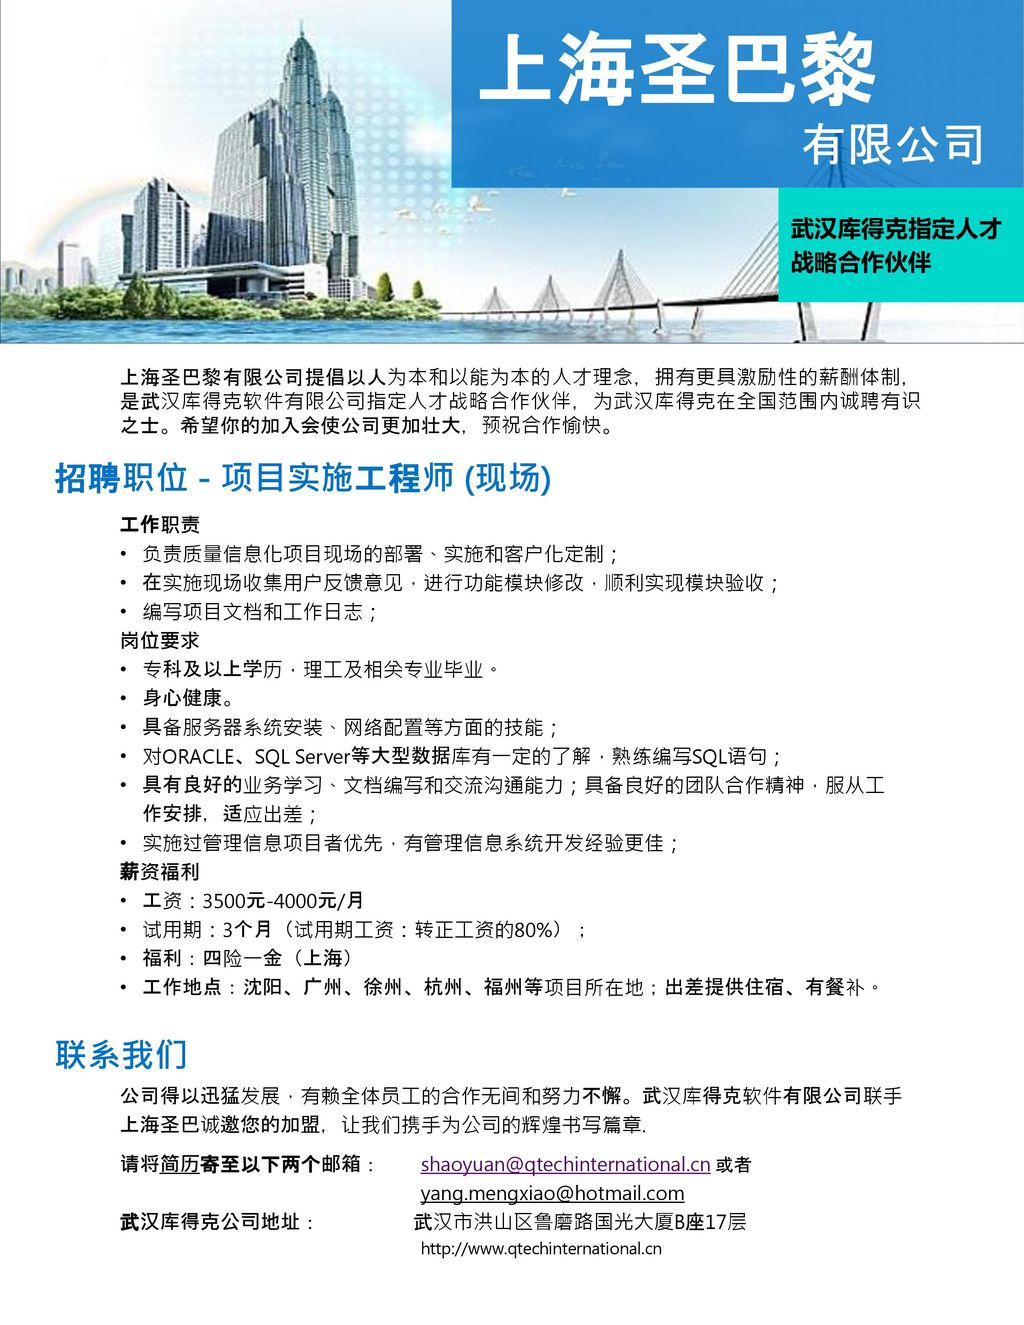 上海圣巴黎 有限公司 招聘职位 - 项目实施工程师 (现场) 联系我们 武汉库得克指定人才战略合作伙伴